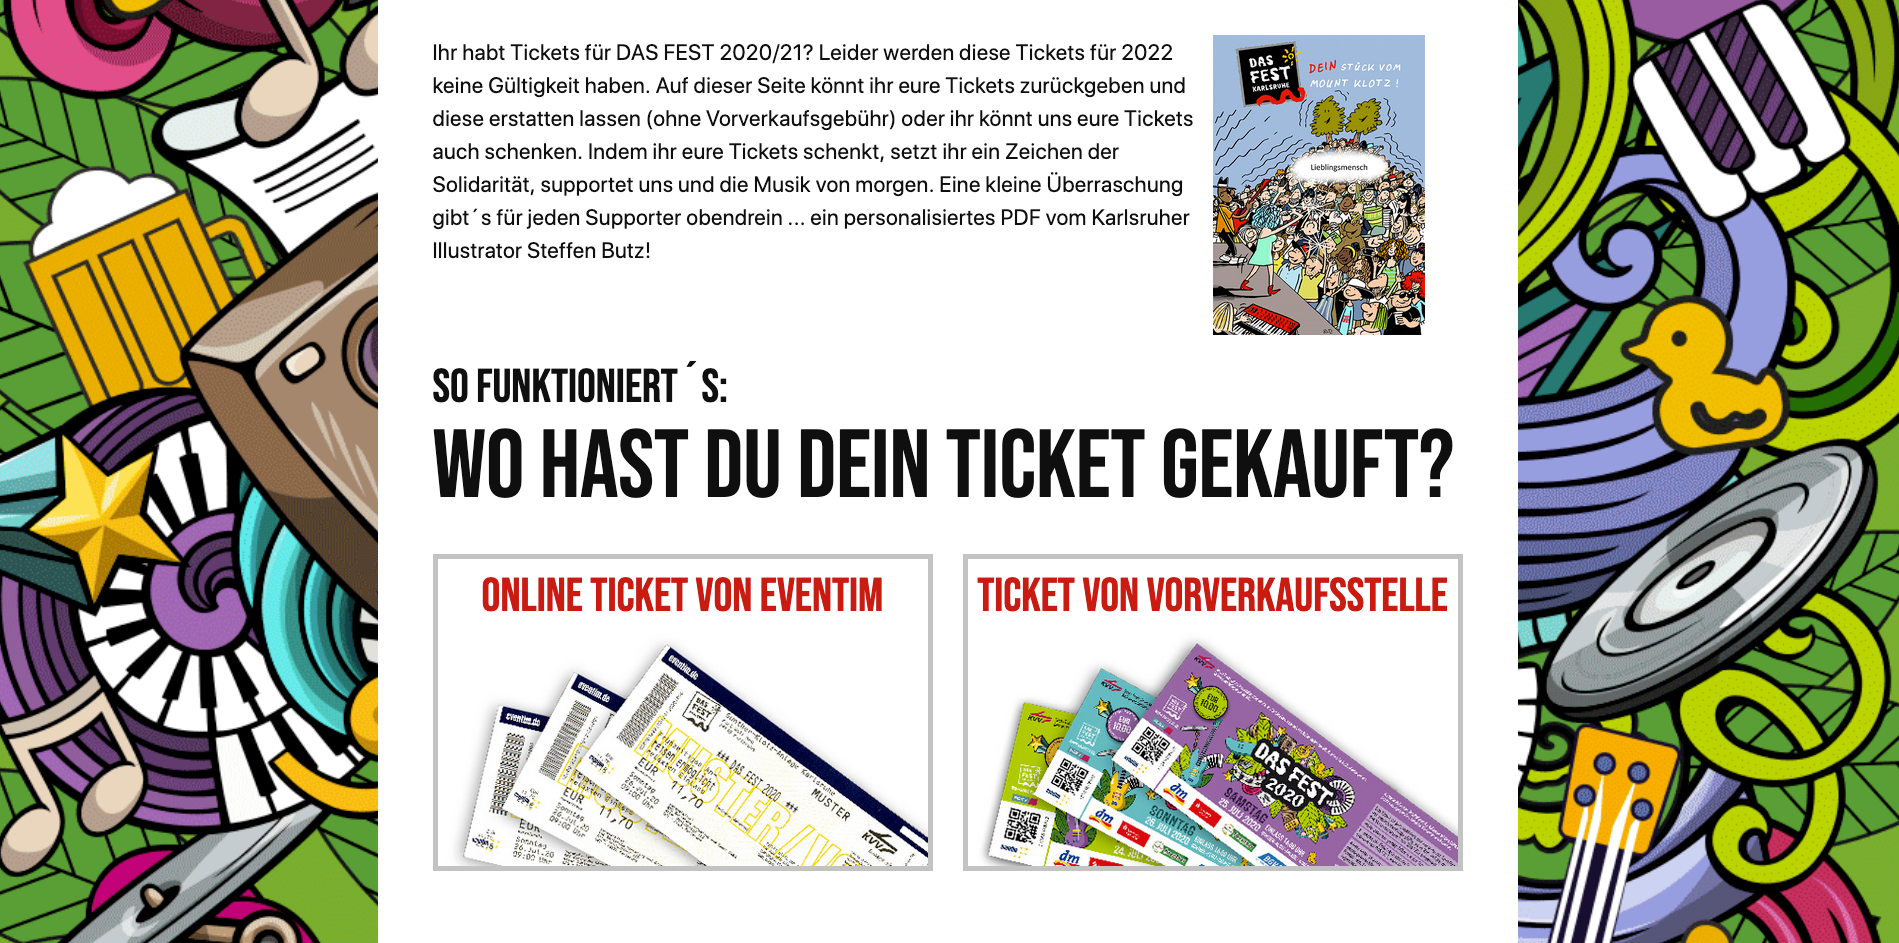 Knapp jedes fünfte Ticket unterstützt bereits die Zukunft des Karlsruher Familienfestivals DAS FEST